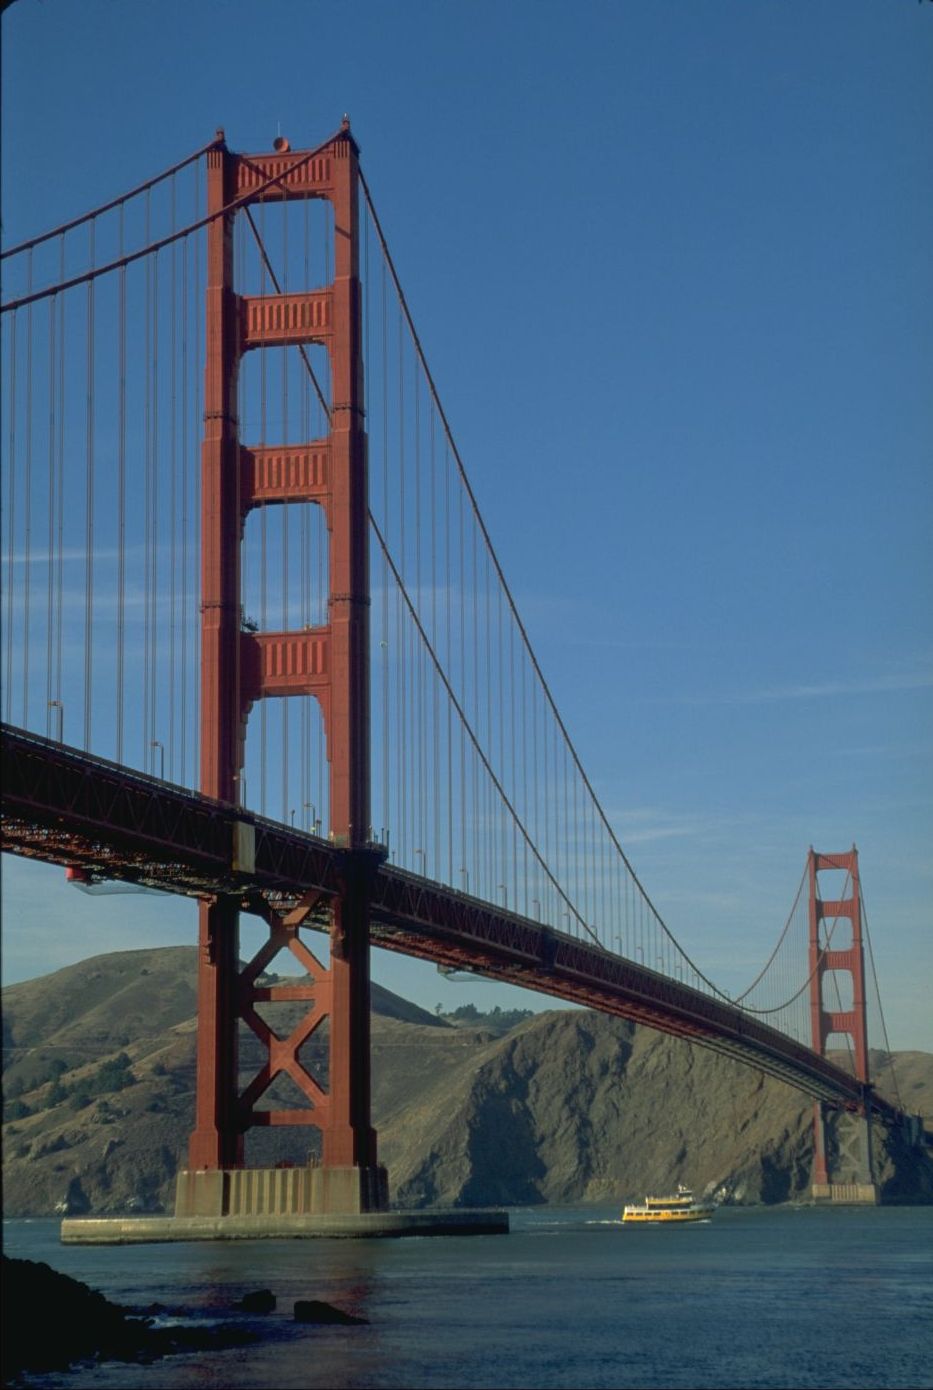 Wer kennt sie nicht - die Golden Gate Bridge